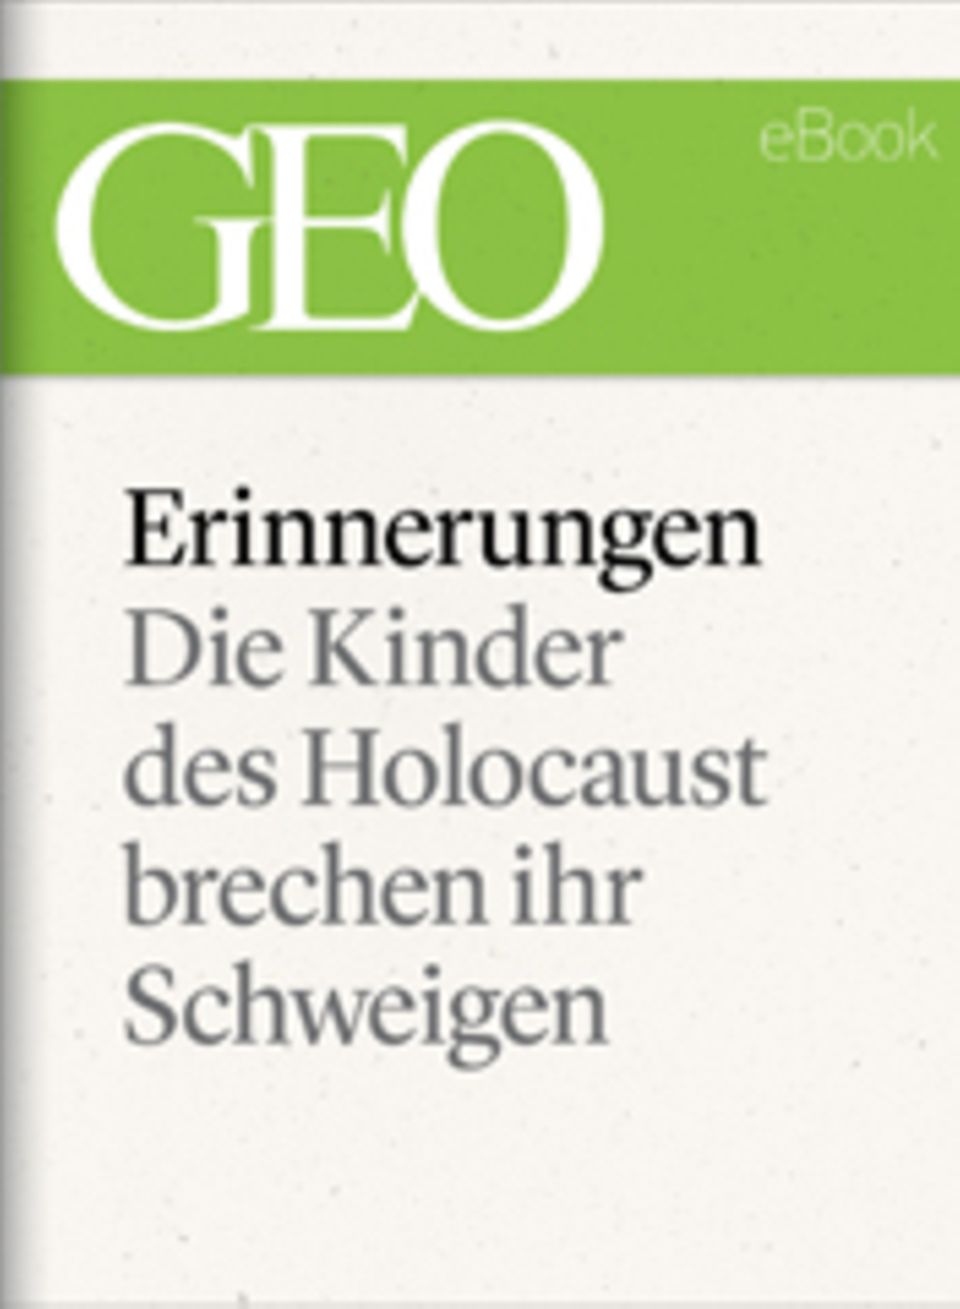 Die Kinder des Holocaust brechen ihr Schweigen: GEO eBook "Erinnerungen"